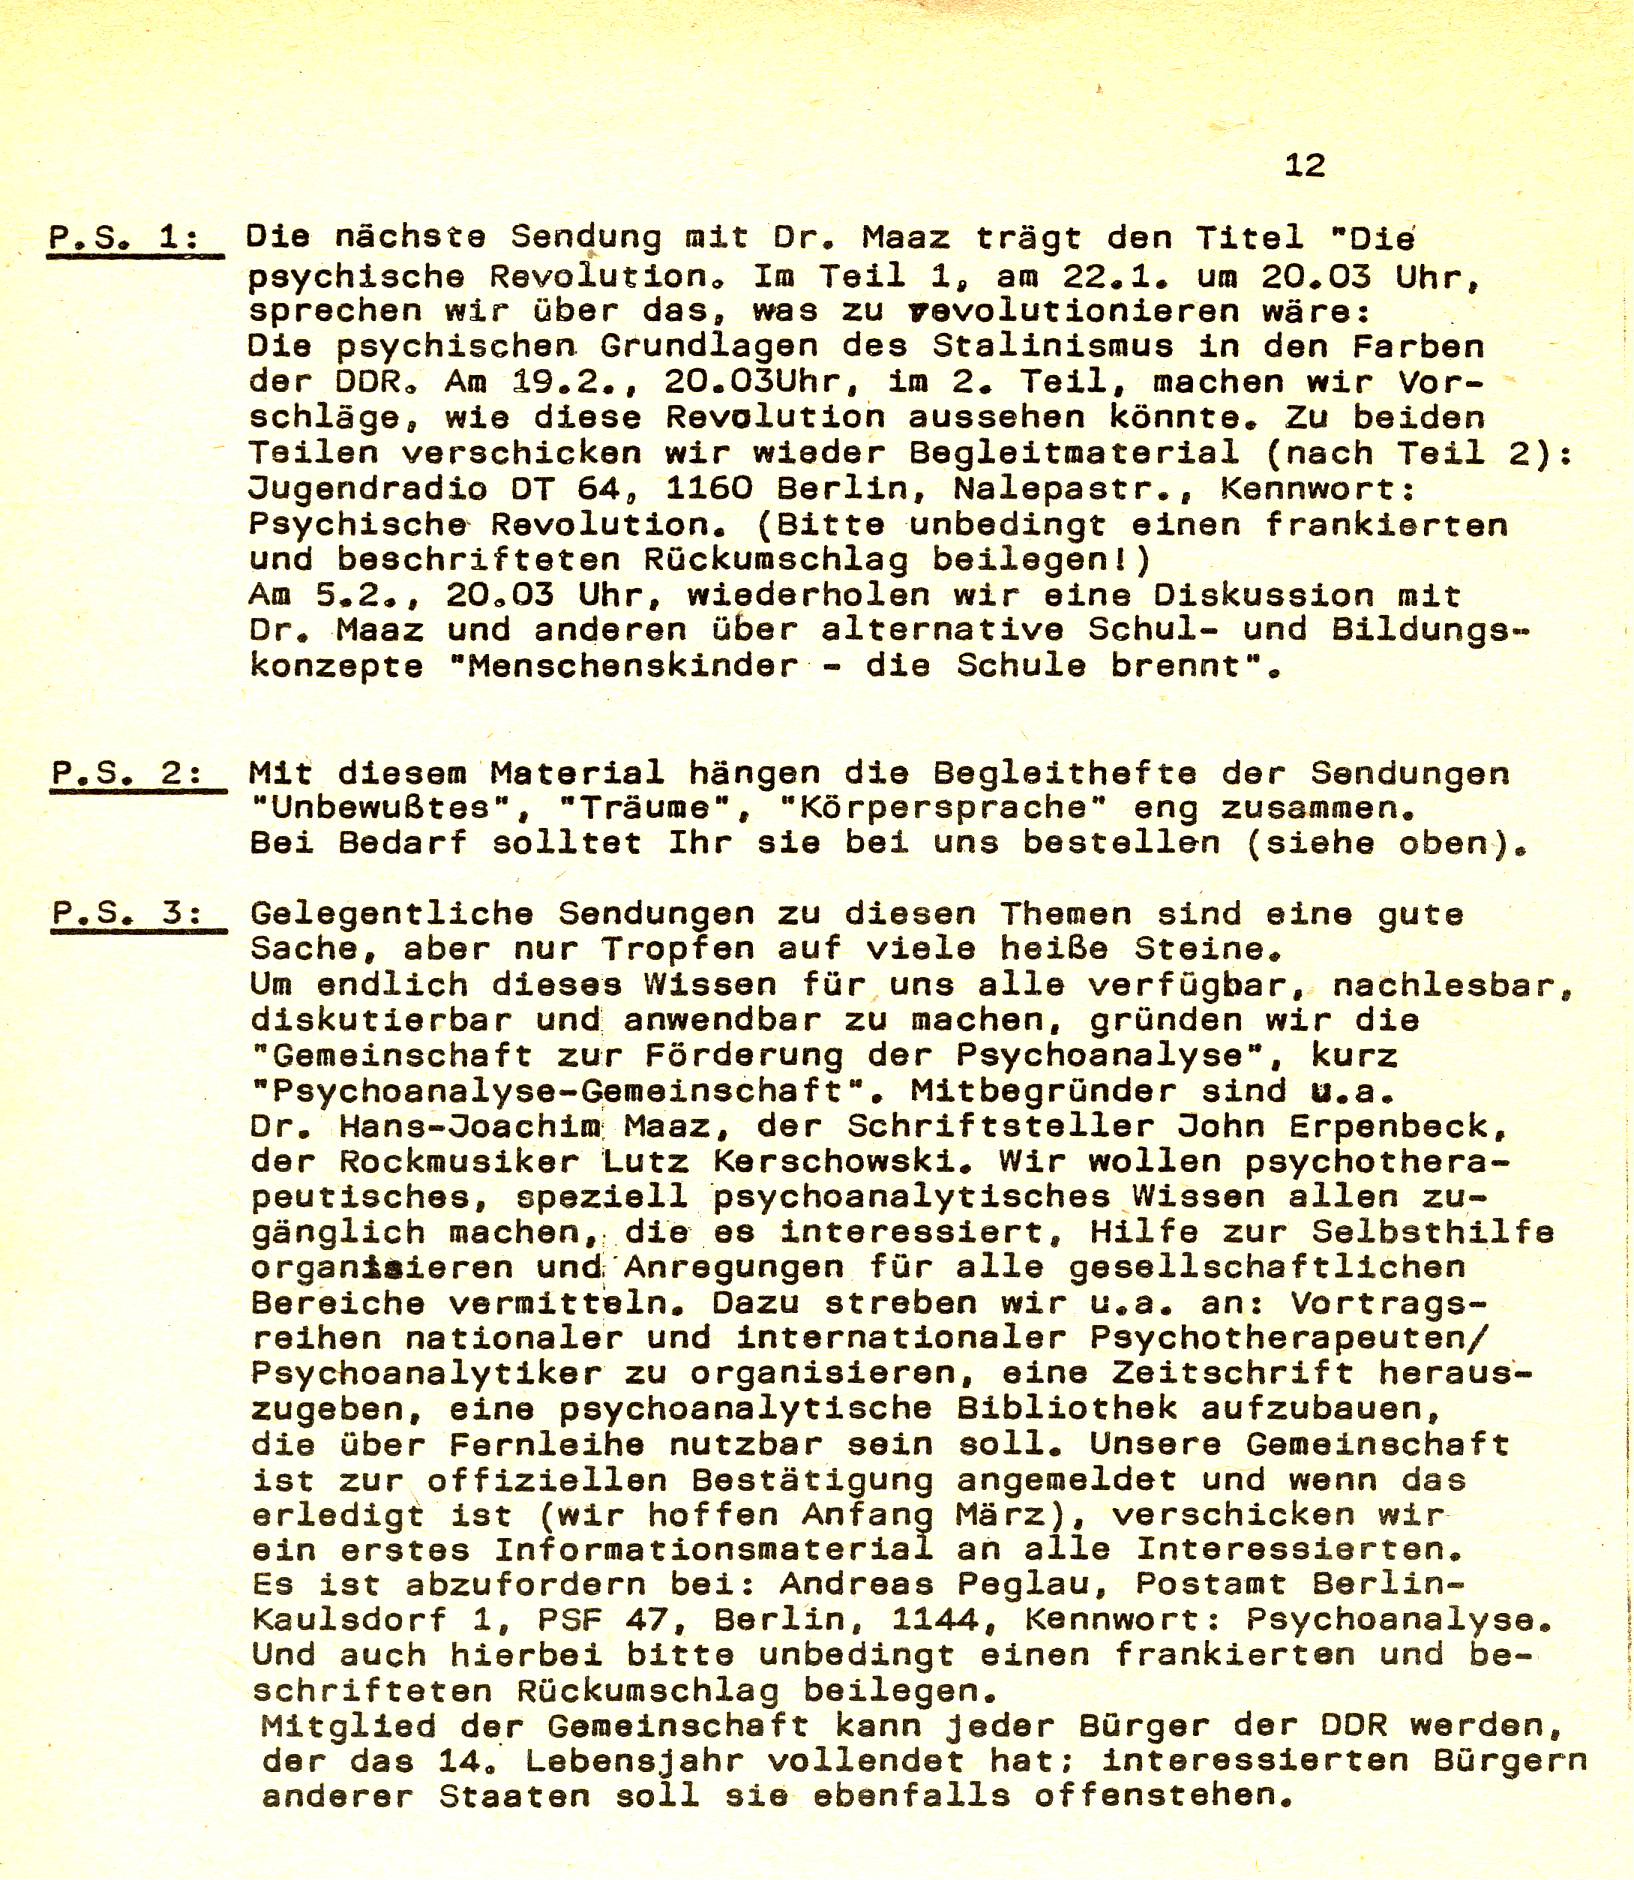 Schriftliche Mitteilung zur Gründung der "Gemeinschaft zur Förderung der Psychoanalyse" im Informationsmaterial der Sendung vom 18.12.1989. 